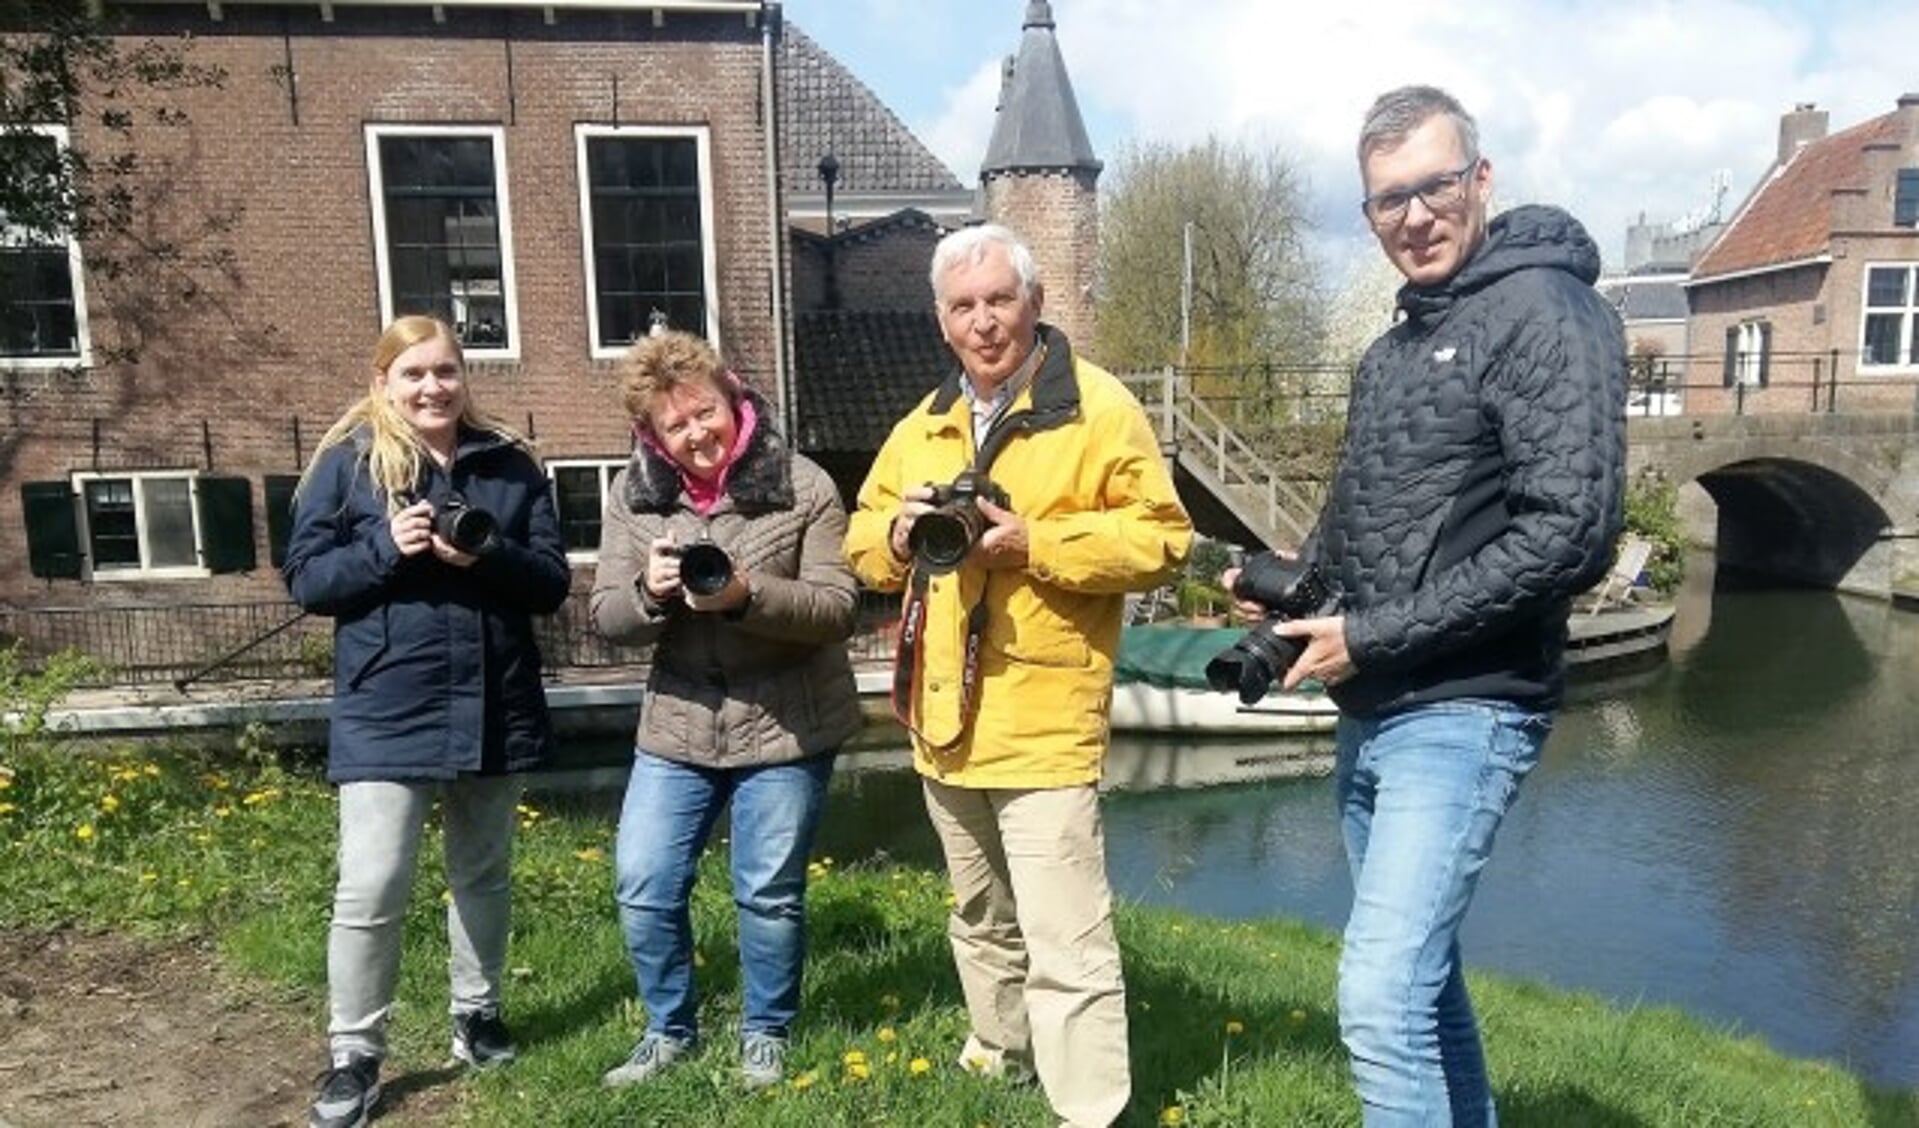 De fotografen in actie. V.l.n.r. Daphne Hauer, Casperine van 't Pad, Herbert Ziher en Ronald Molegraaf. (Foto: Karin Doornbos)